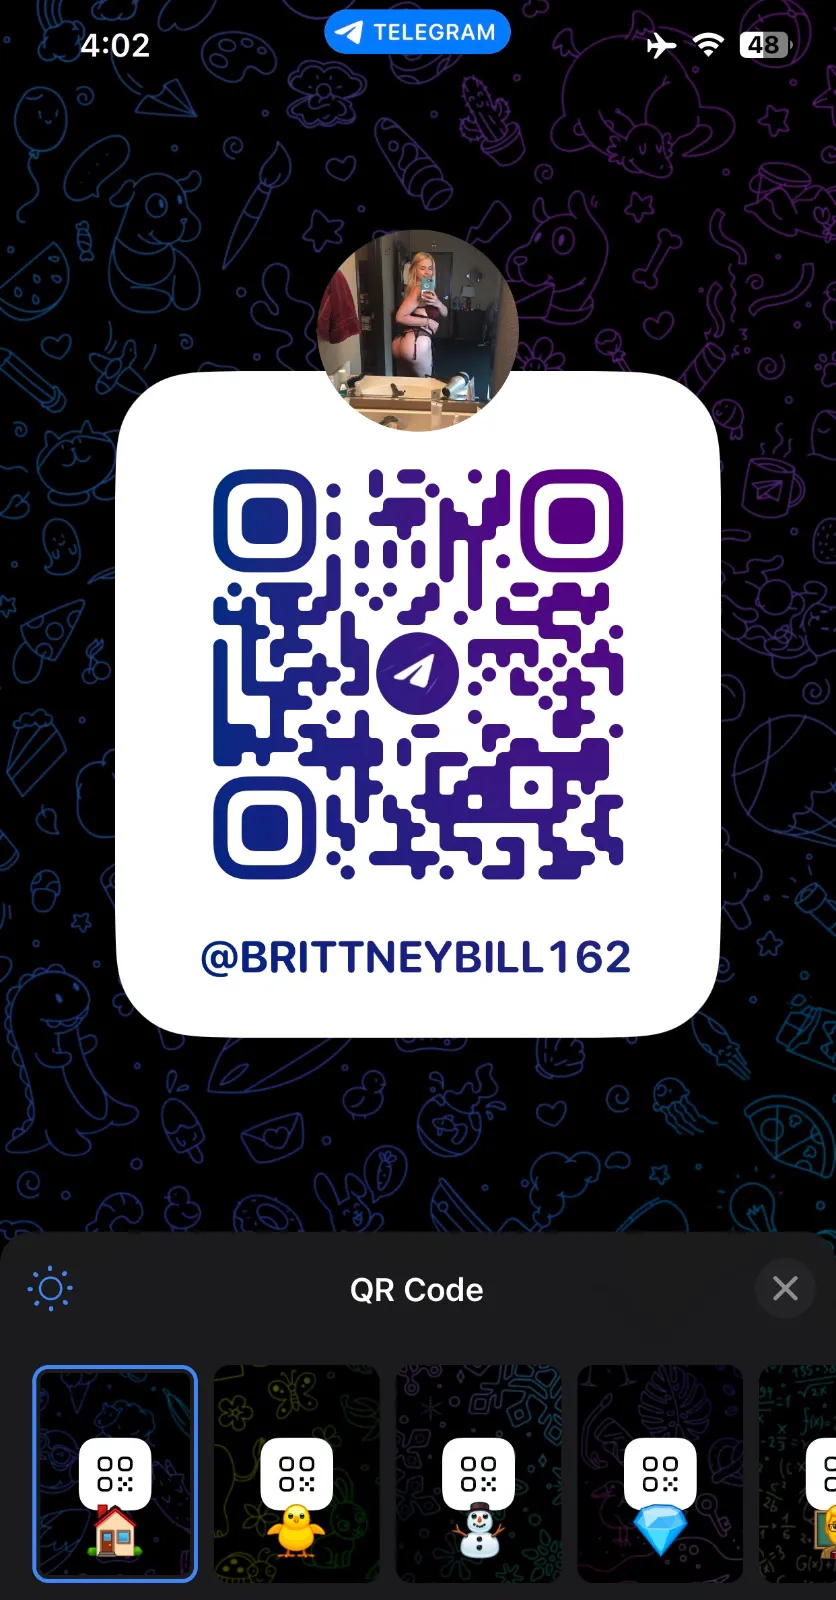 Britney bill